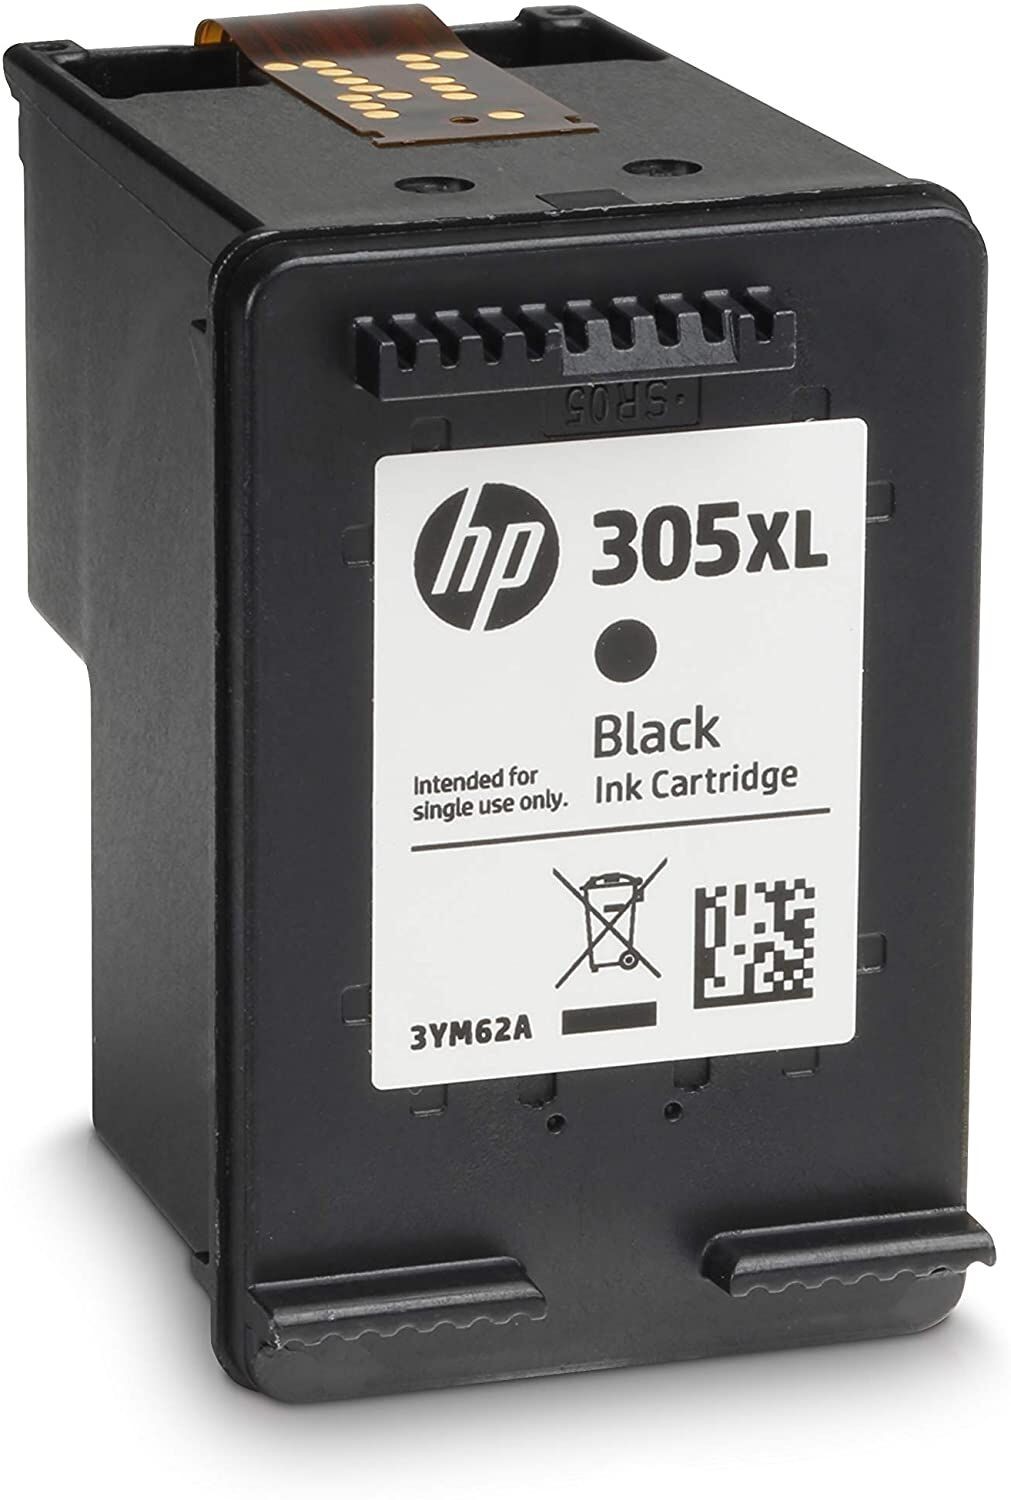 305XL - 2 Cartouches compatibles HP 305 XL Noir et Couleurs - pour